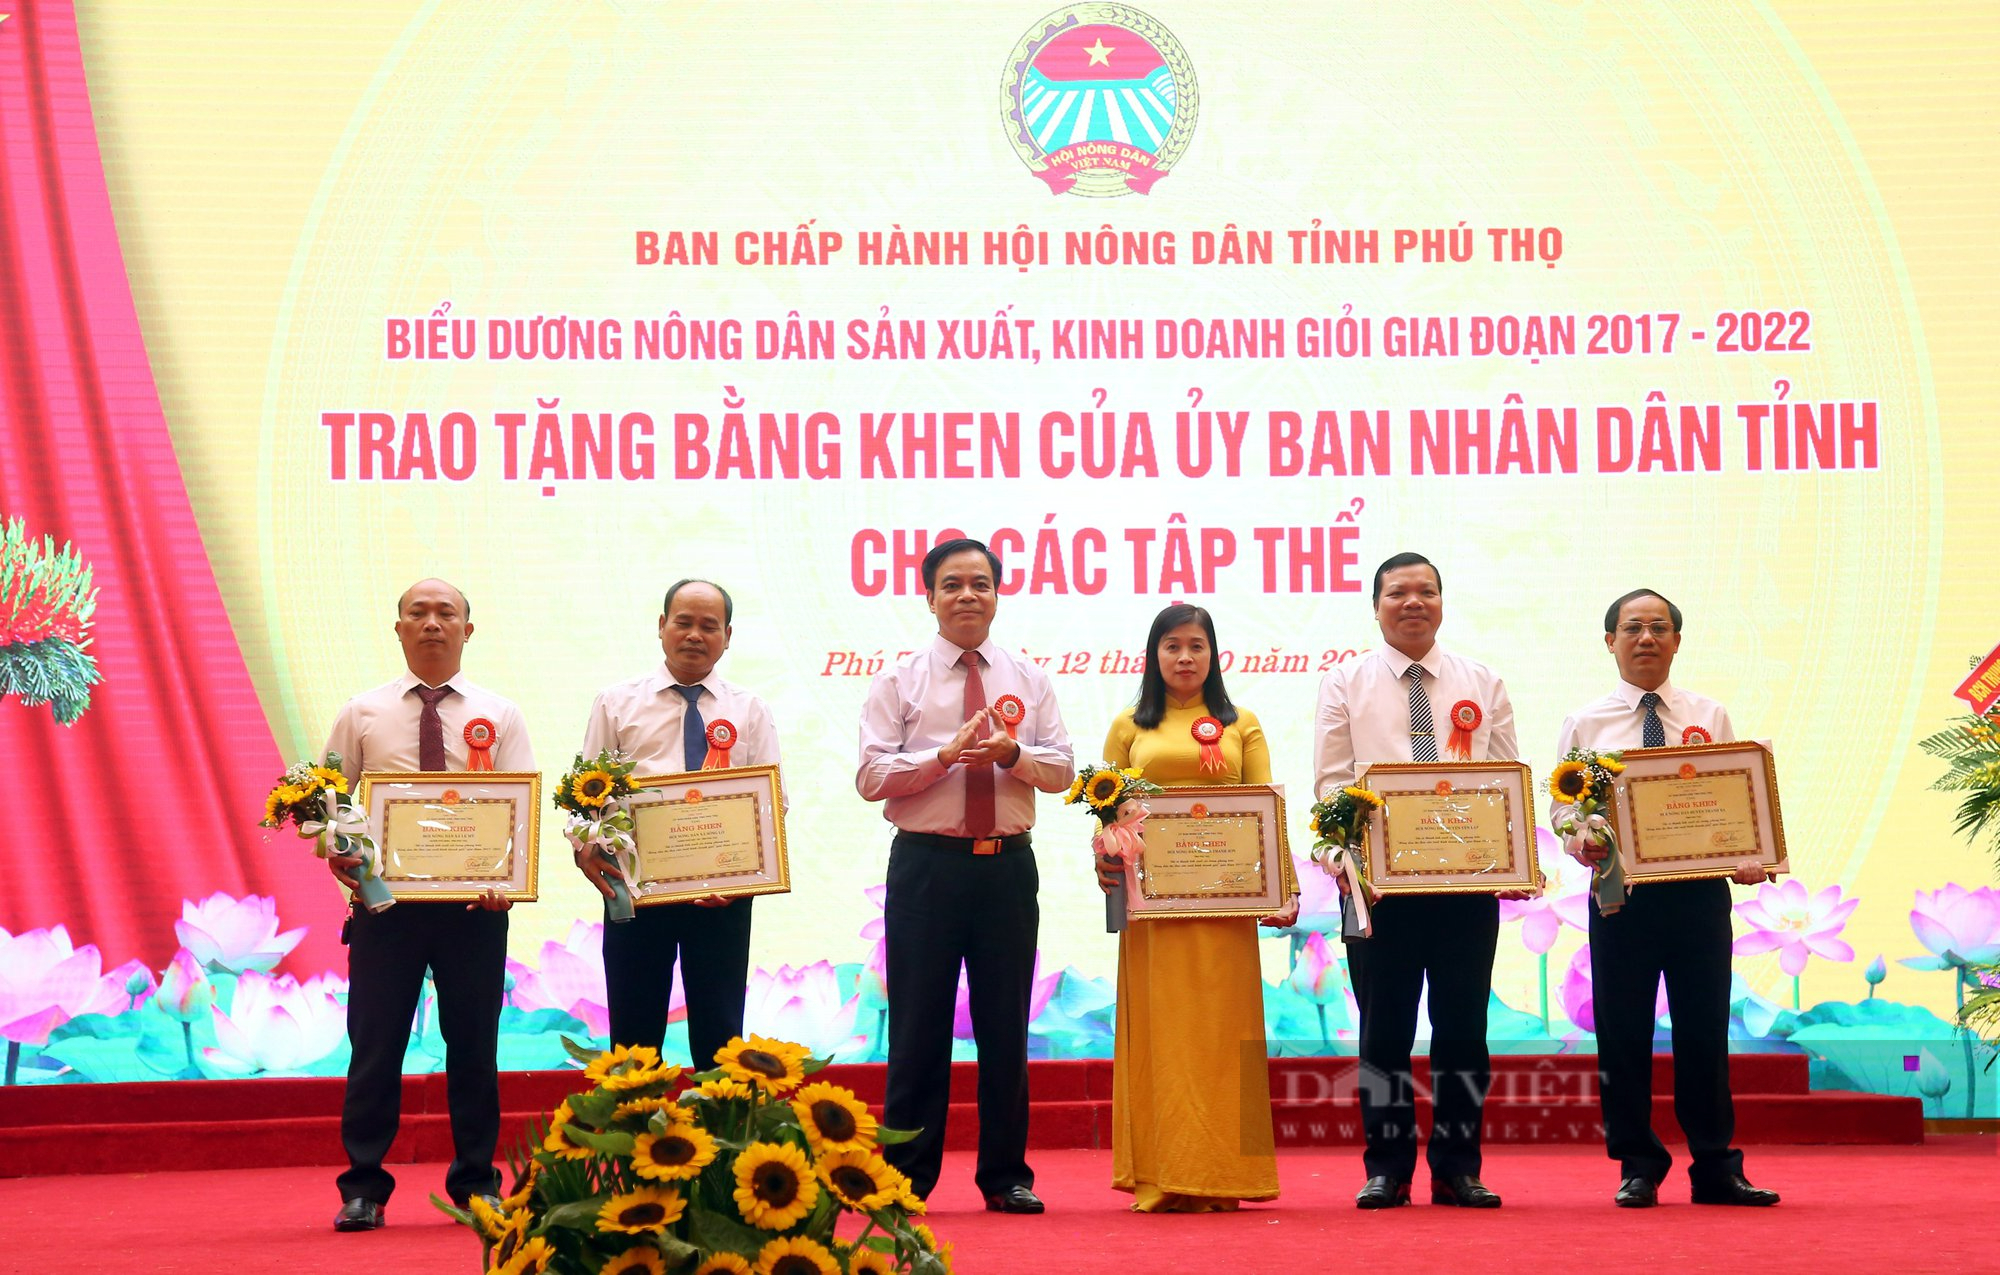 Khen thưởng 13 tập thể, 130 nông dân trong phong trào nông dân sản xuất kinh doanh giỏi 5 năm qua ở Phú Thọ - Ảnh 5.